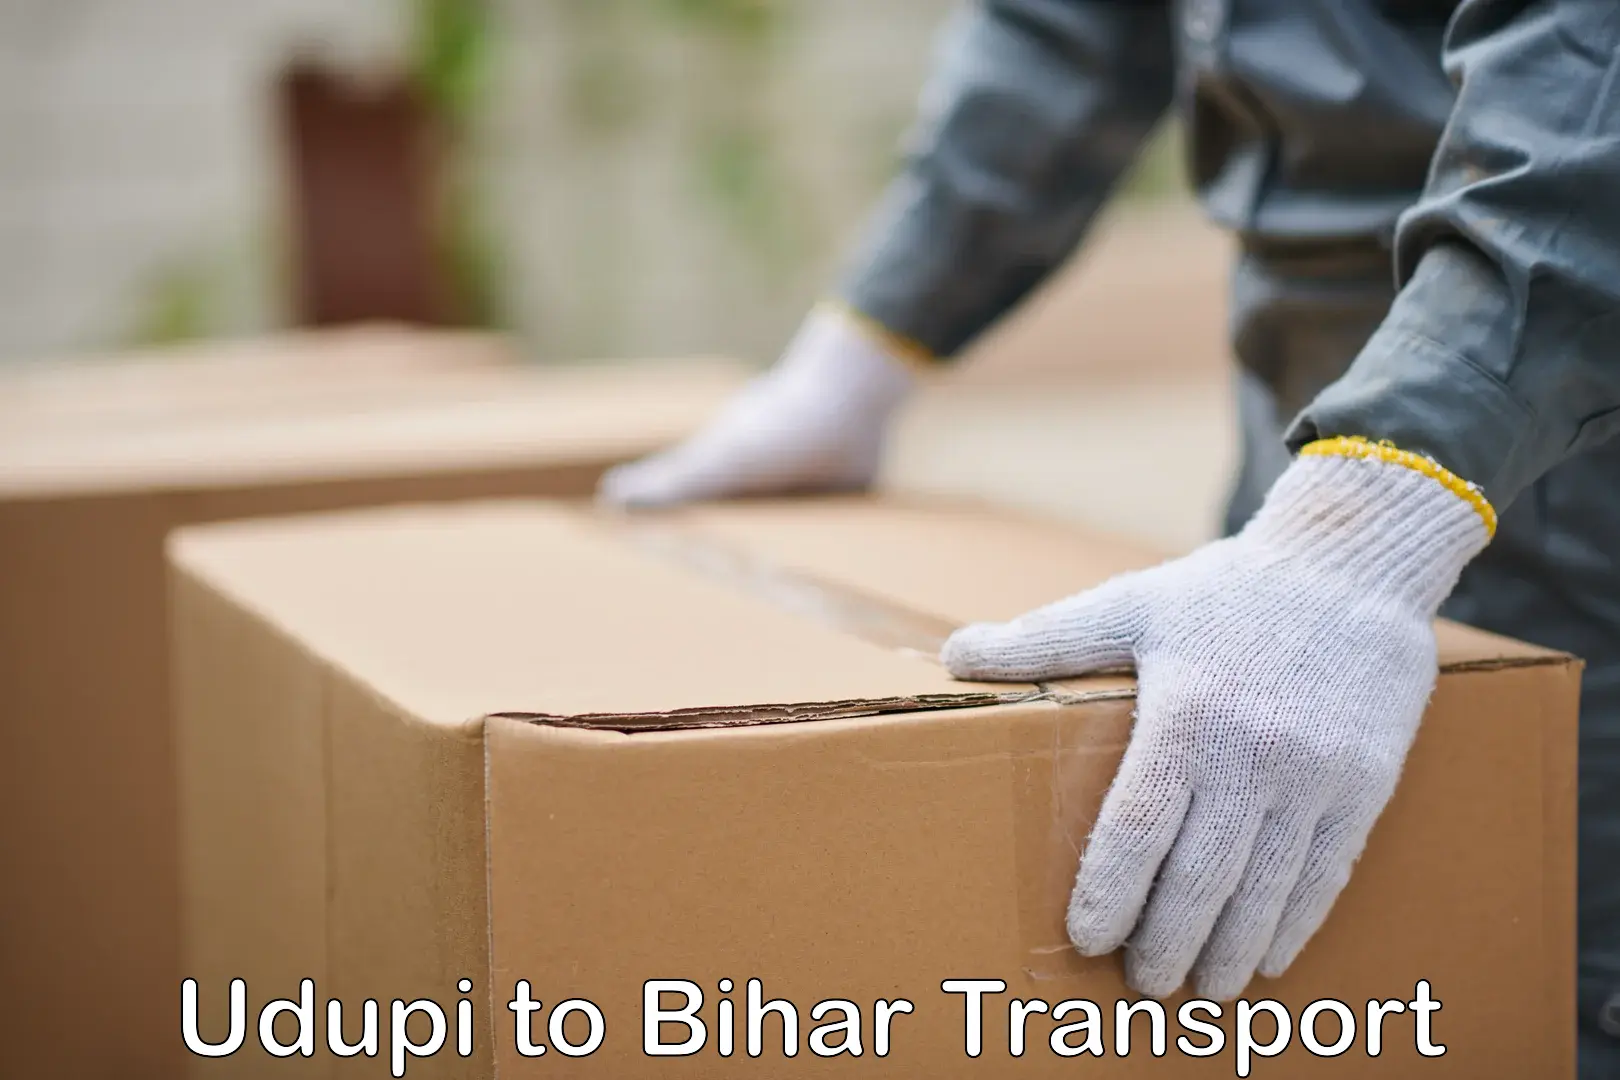 Furniture transport service Udupi to Alamnagar